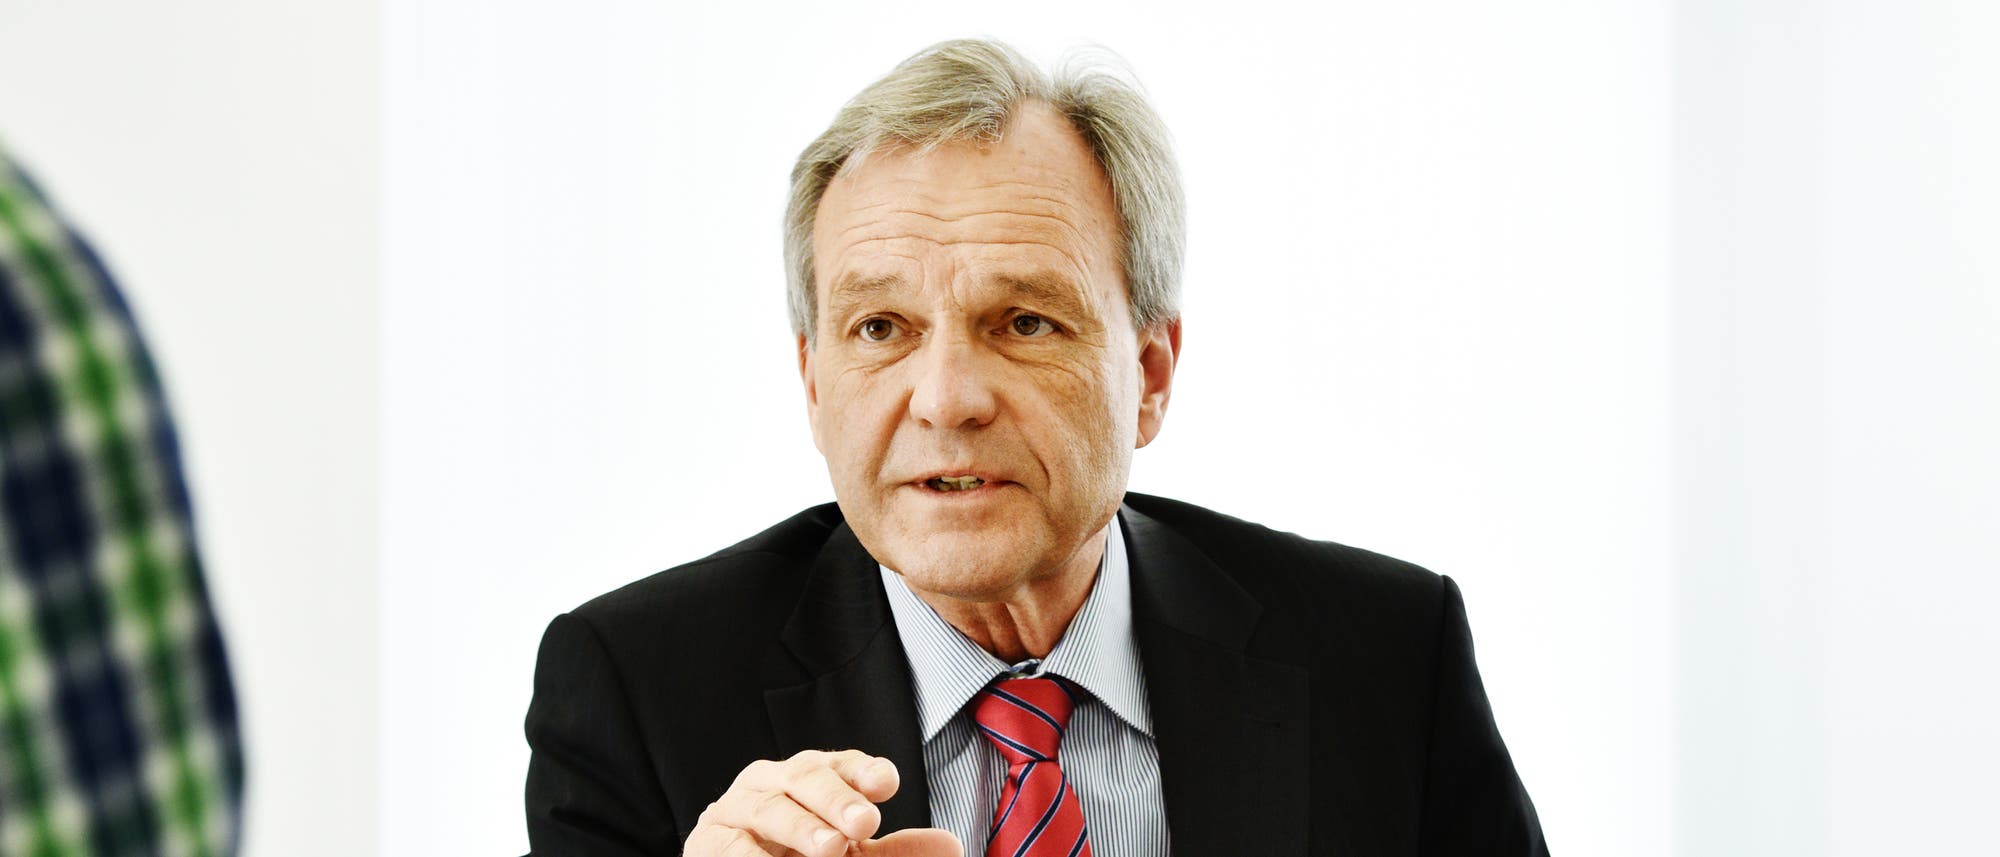 Karsten Danzmann ist Direktor am Max-Planck-Institut für Gravitationsphysik in Hannover.